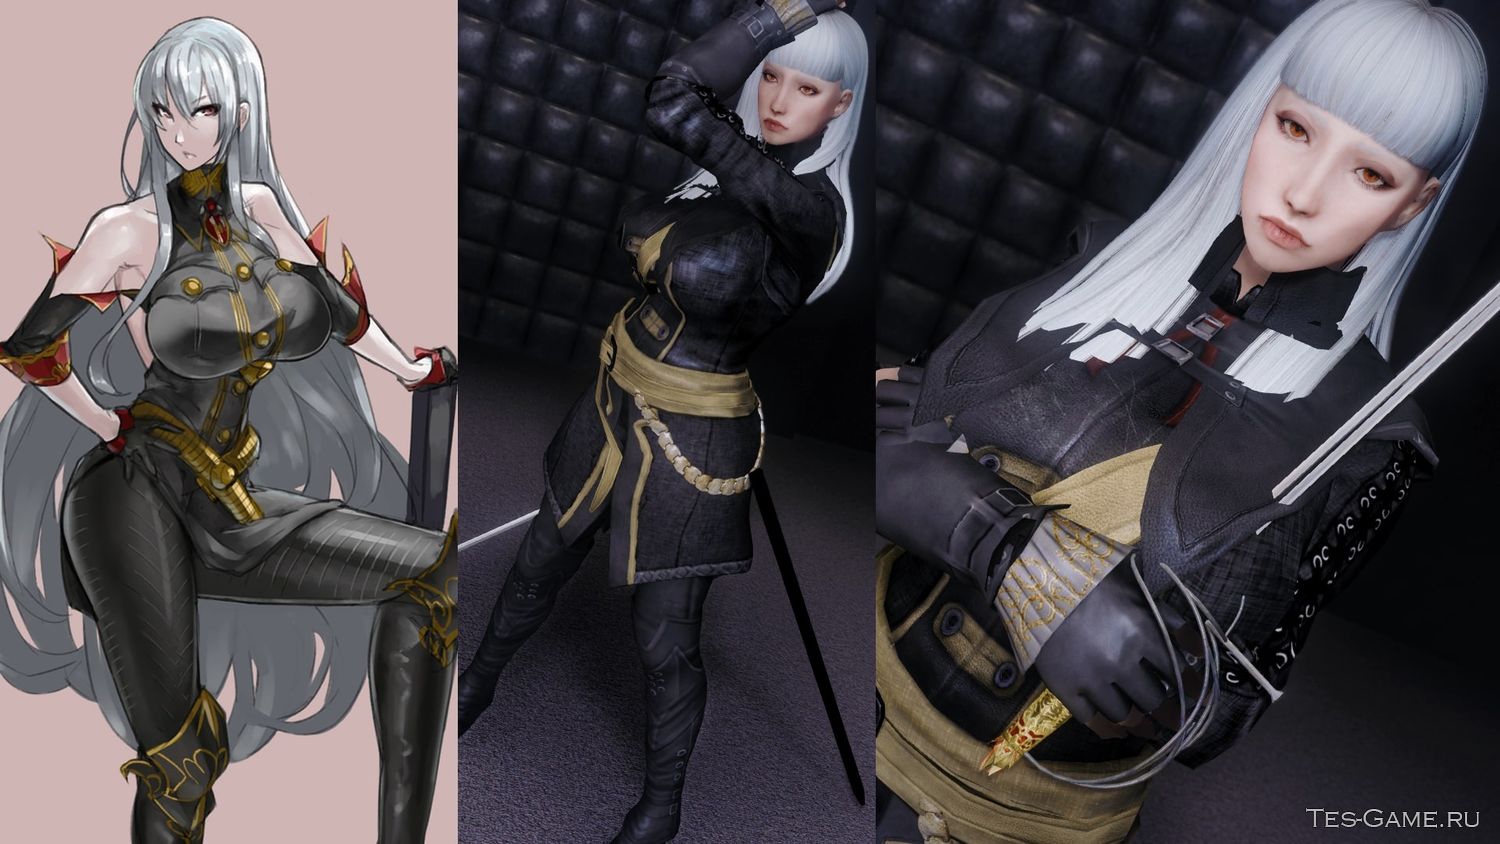 Мод для Skyrim добавляет новую спутницу Сельварию Блес из аниме "Хрони...